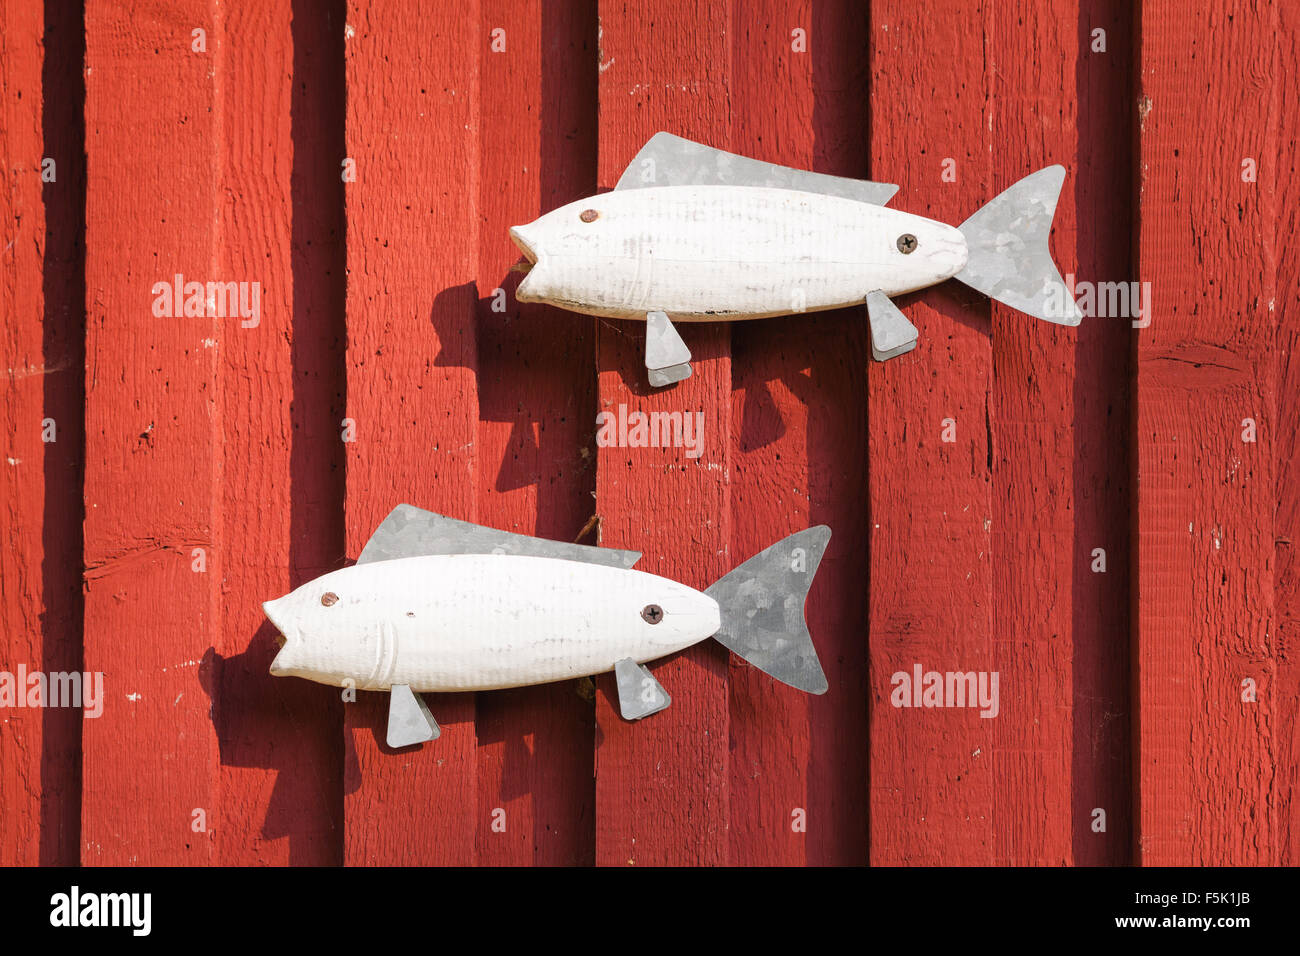 Décoration en bois scandinave, poissons blancs sur les mur de la maison rouge Banque D'Images